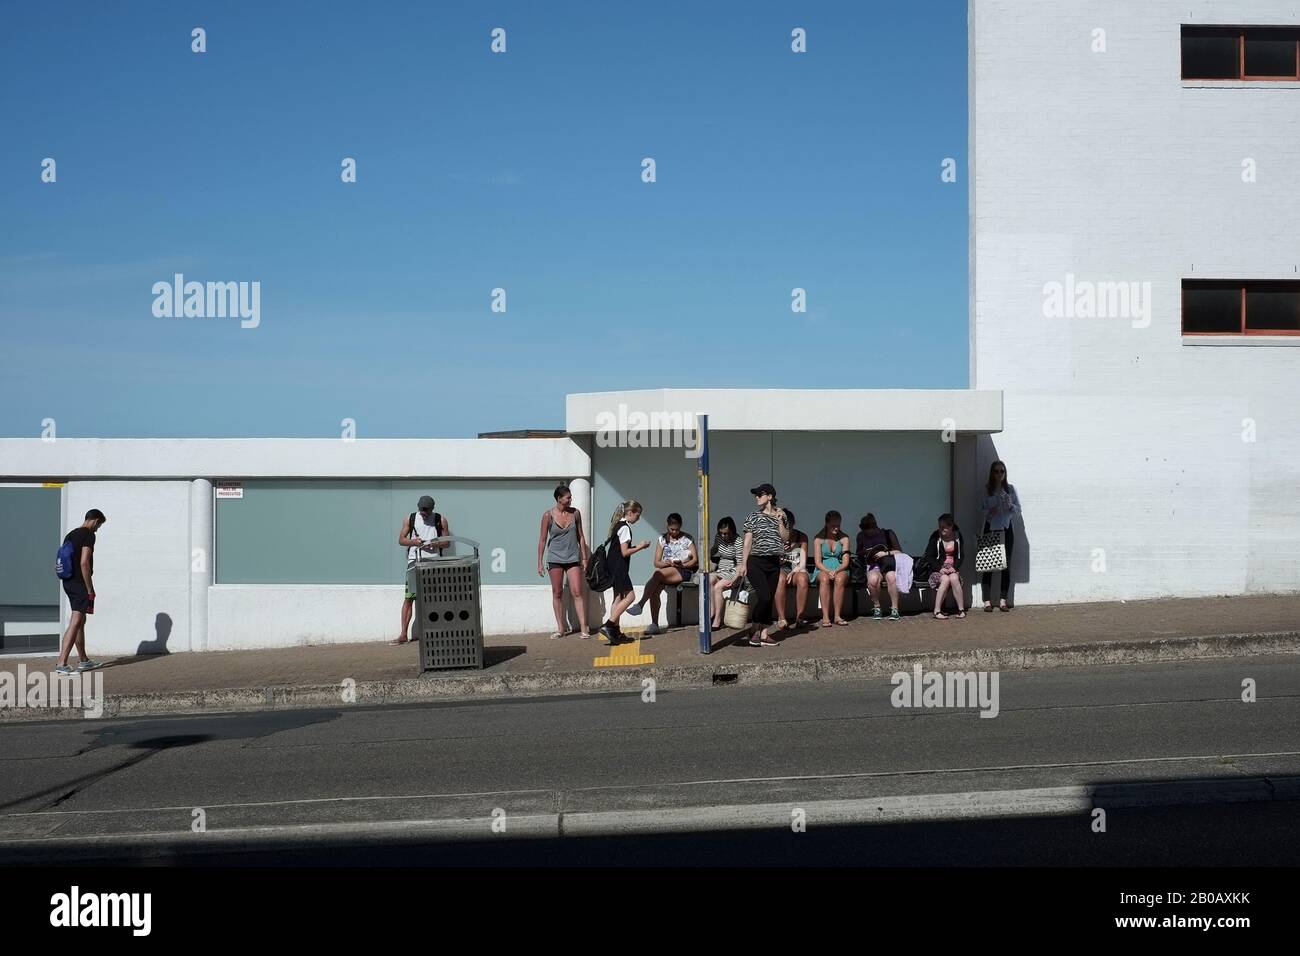 Les gens qui attendent un arrêt de bus Bondi Beach; bâtiment blanc coupé contre un ciel bleu, une journée ensoleillée, sur Campbell Parade, Sydney, Australie Banque D'Images